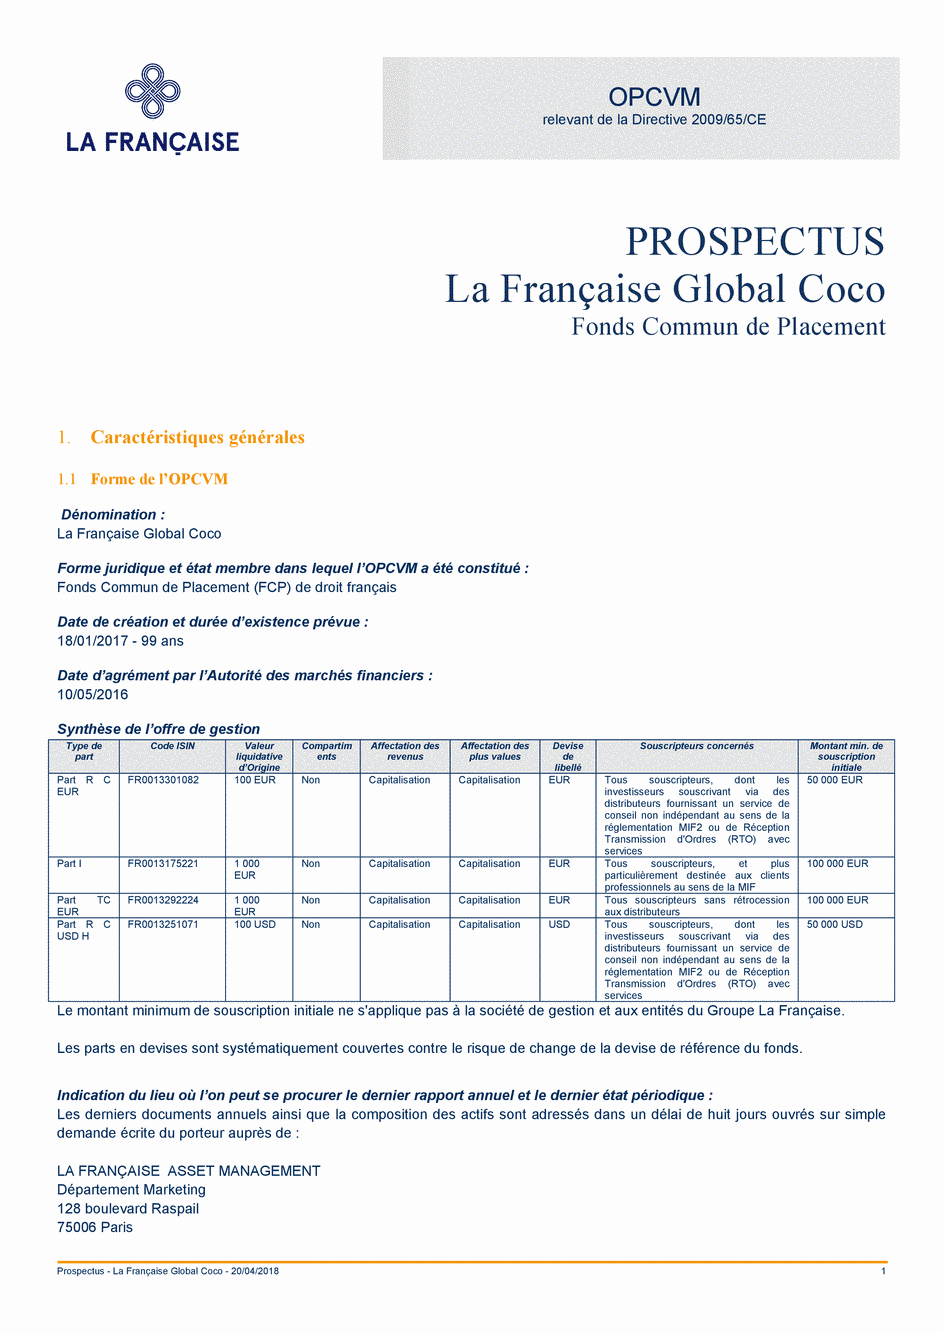 Prospectus La Française Global Coco - Part R D USD H - 20/04/2018 - Français